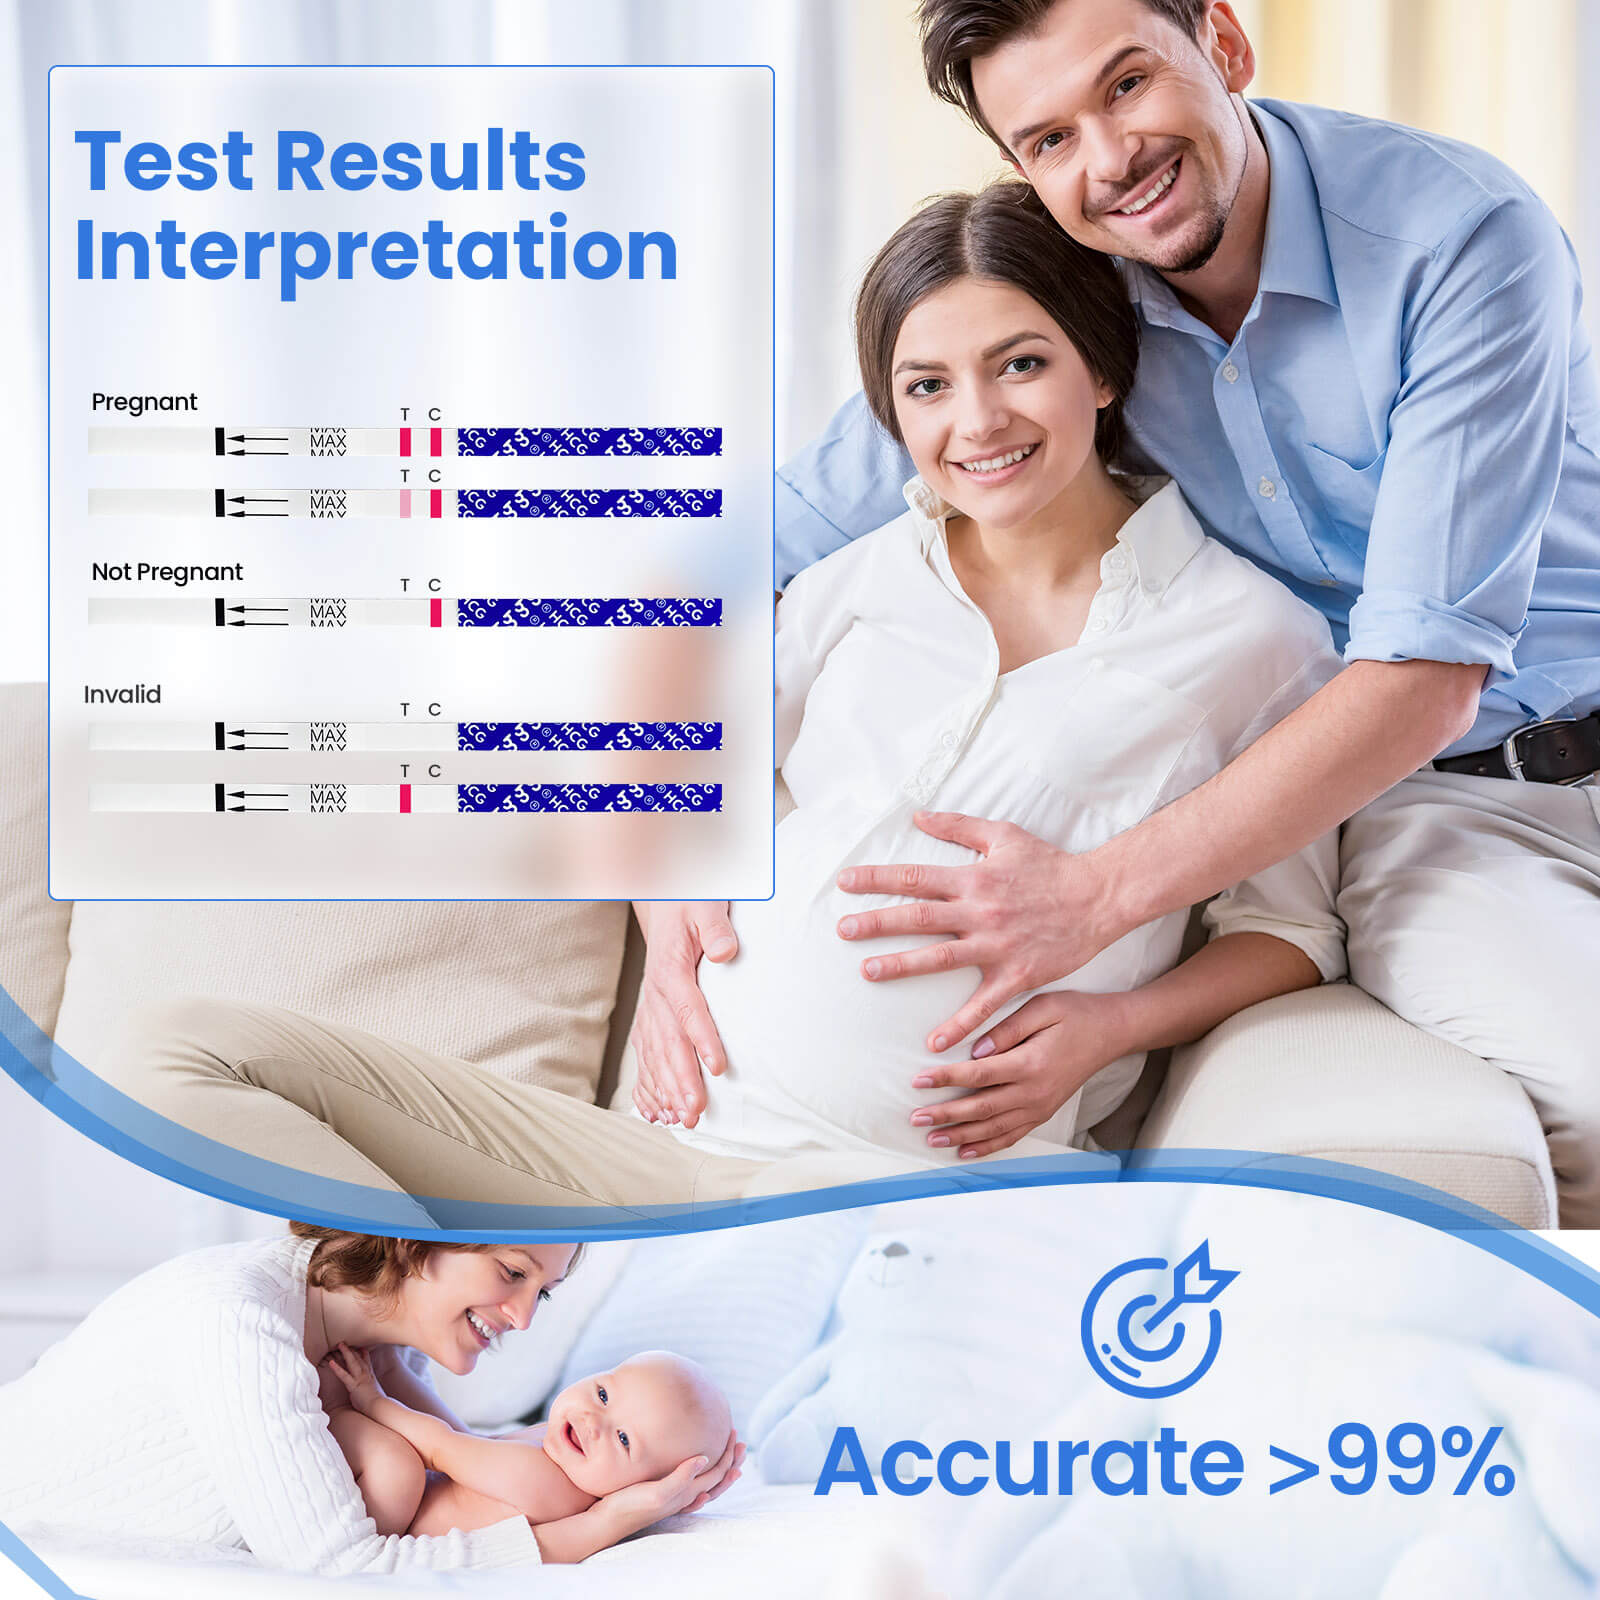 hcg pregnancy test femometer6